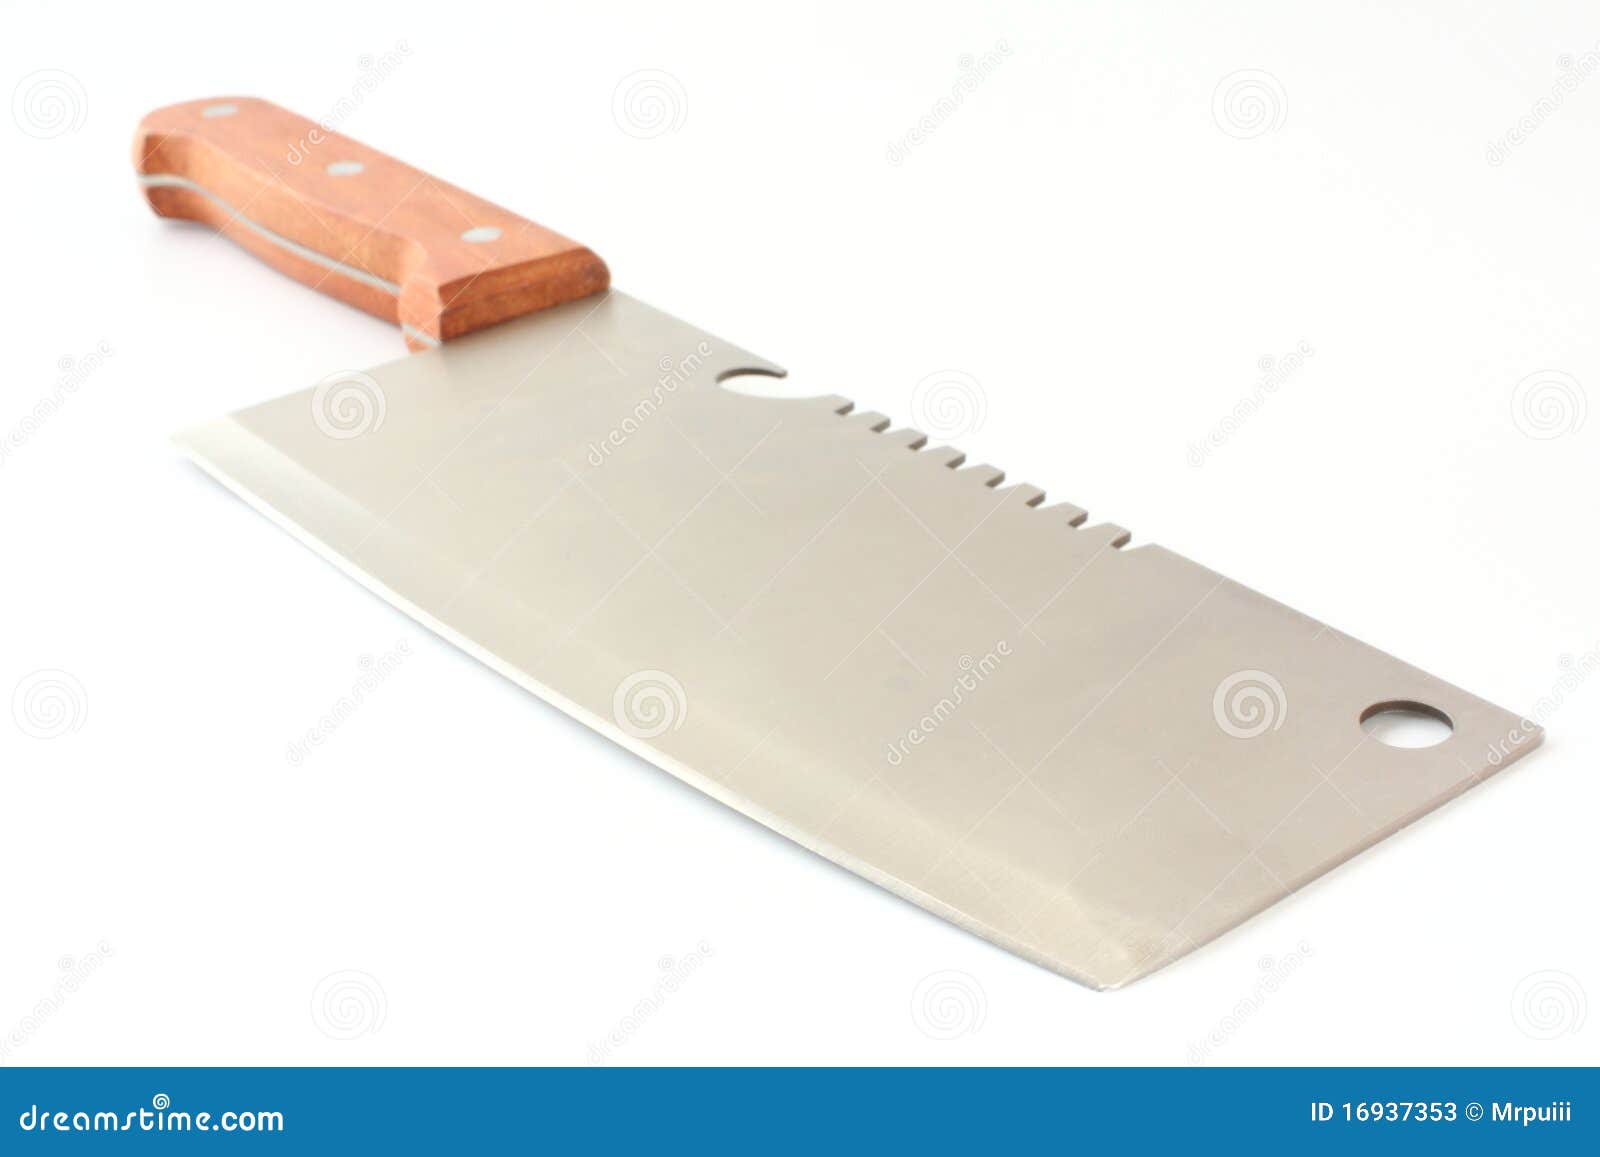 Big Utility Kitchen Knife Stock Image Image Of Chef 16937353